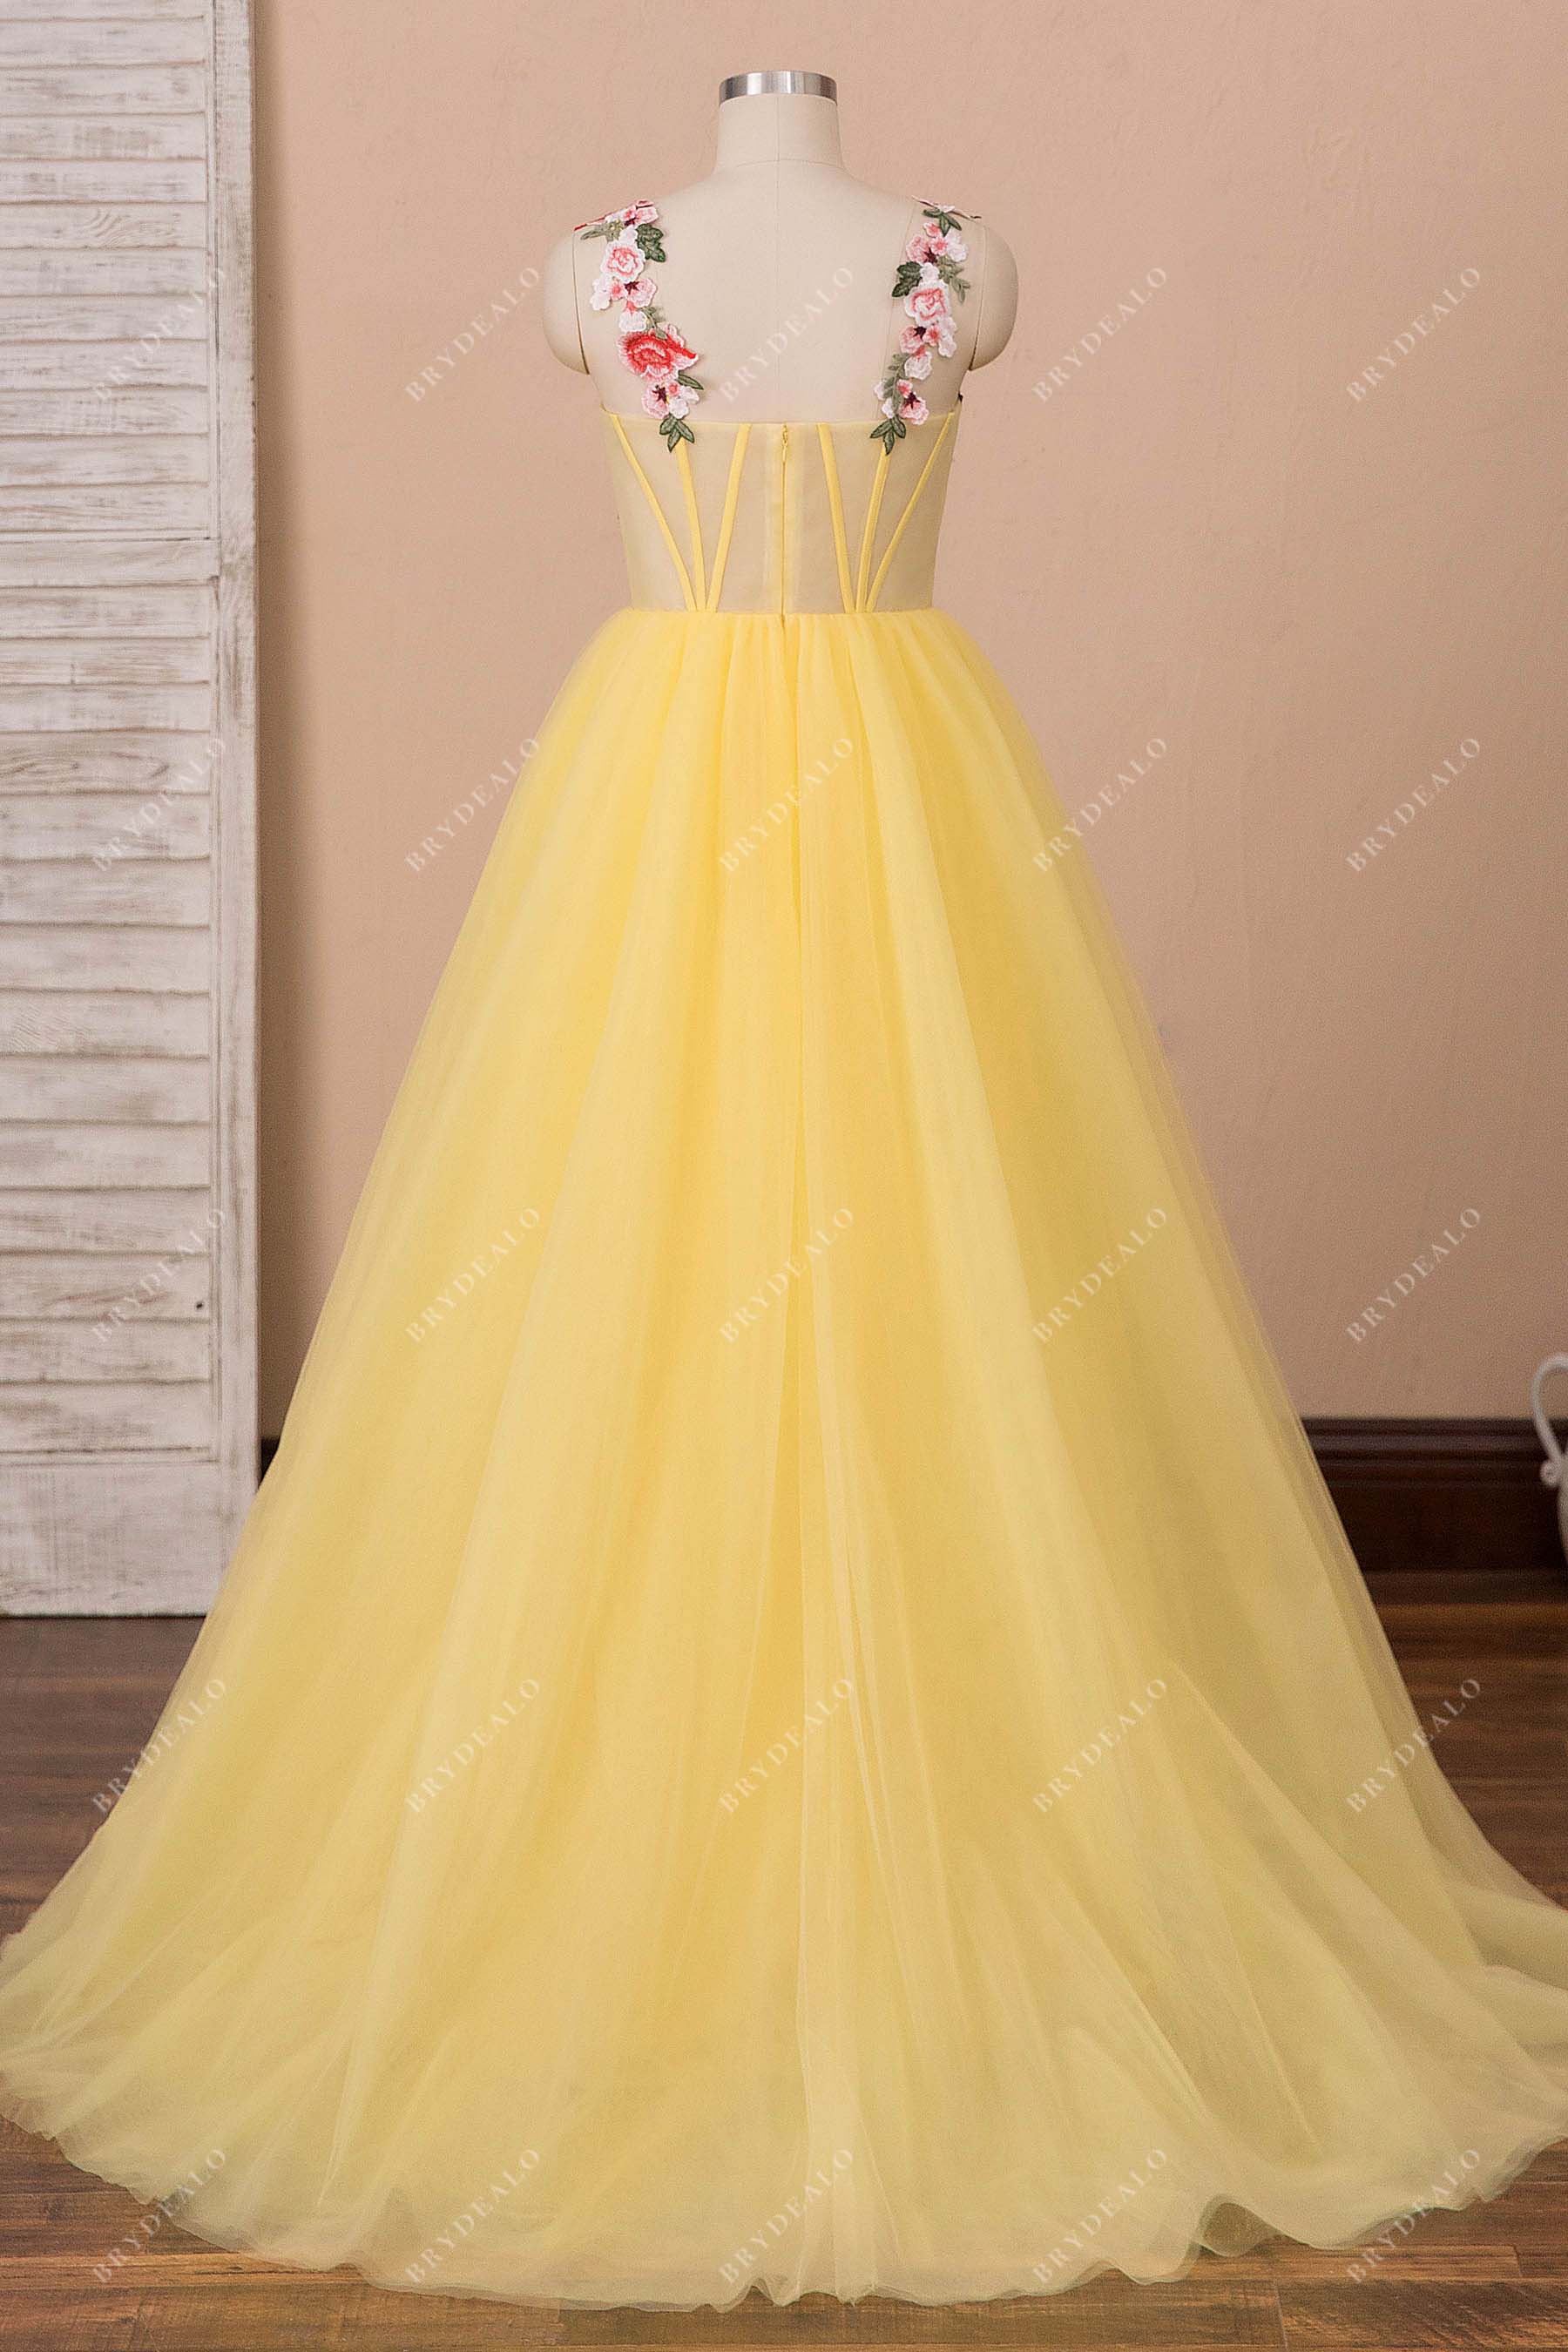 https://brydealofactory.com/cdn/shop/products/sheer-corset-yellow-A-line-prom-dress.jpg?v=1643531989&width=1800